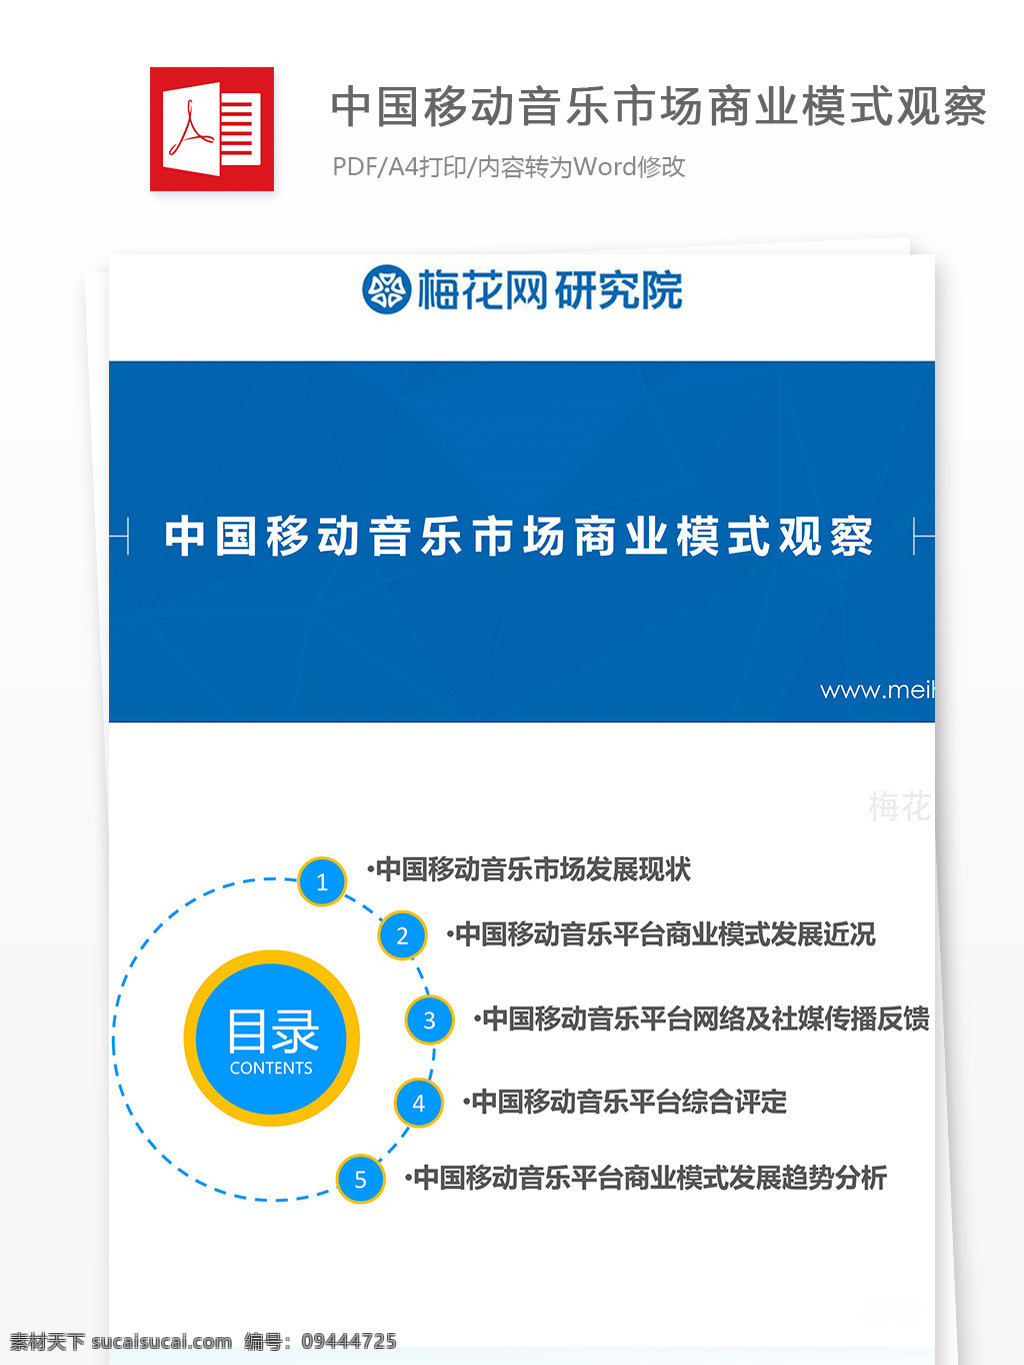 中国移动 音乐 市场 商业 模式 观察 音乐软件 商业模式观察 移动音乐 市场分析 数据分析 行业分析报告